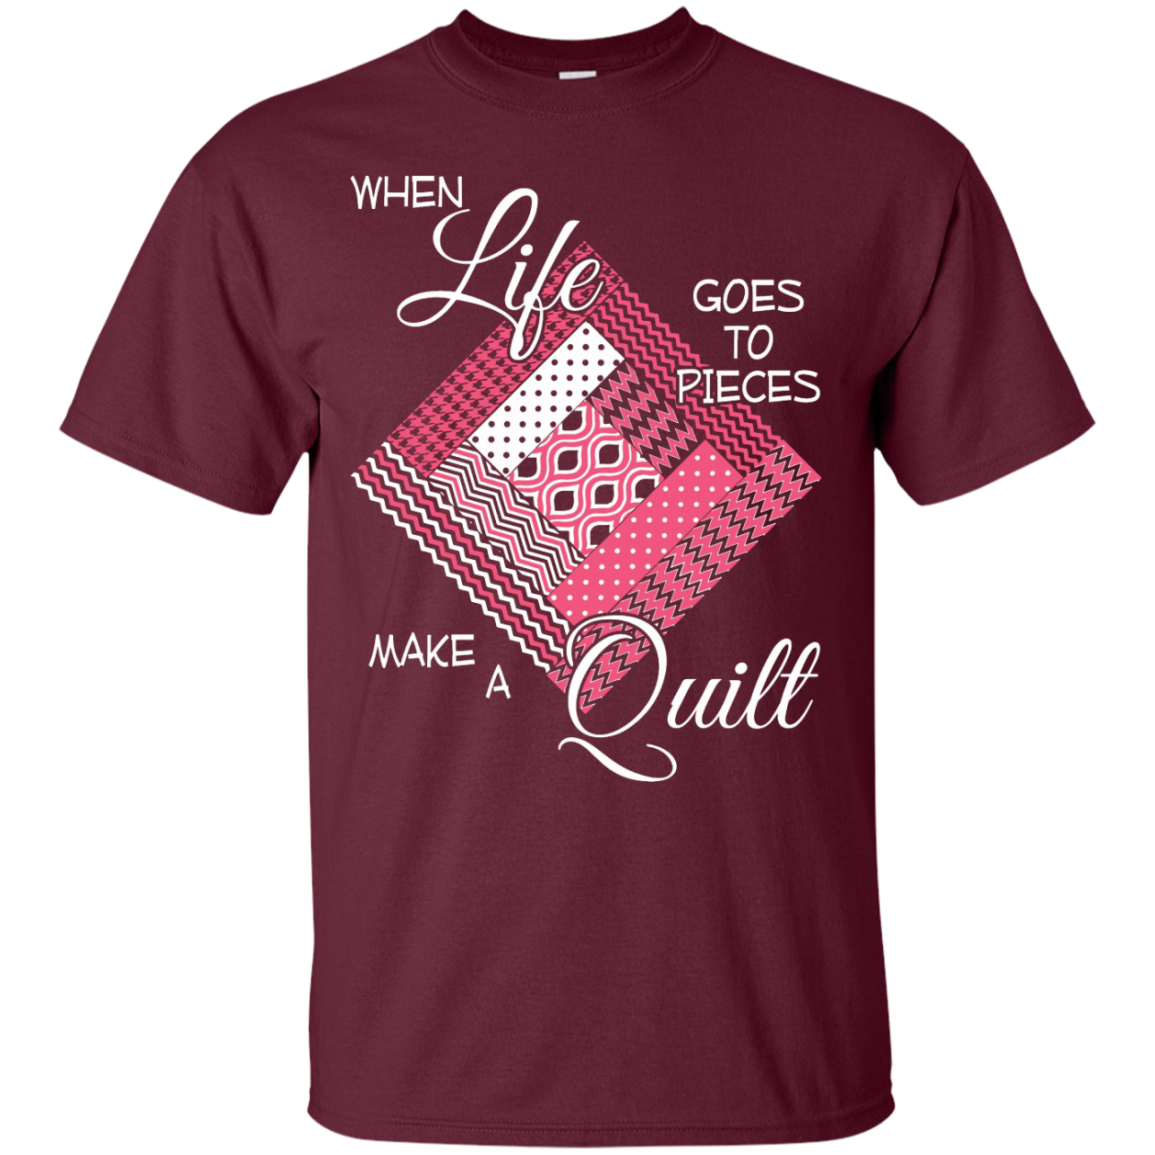 Make a Quilt (pink) Custom Ultra Cotton T-Shirt - Crafter4Life - 6